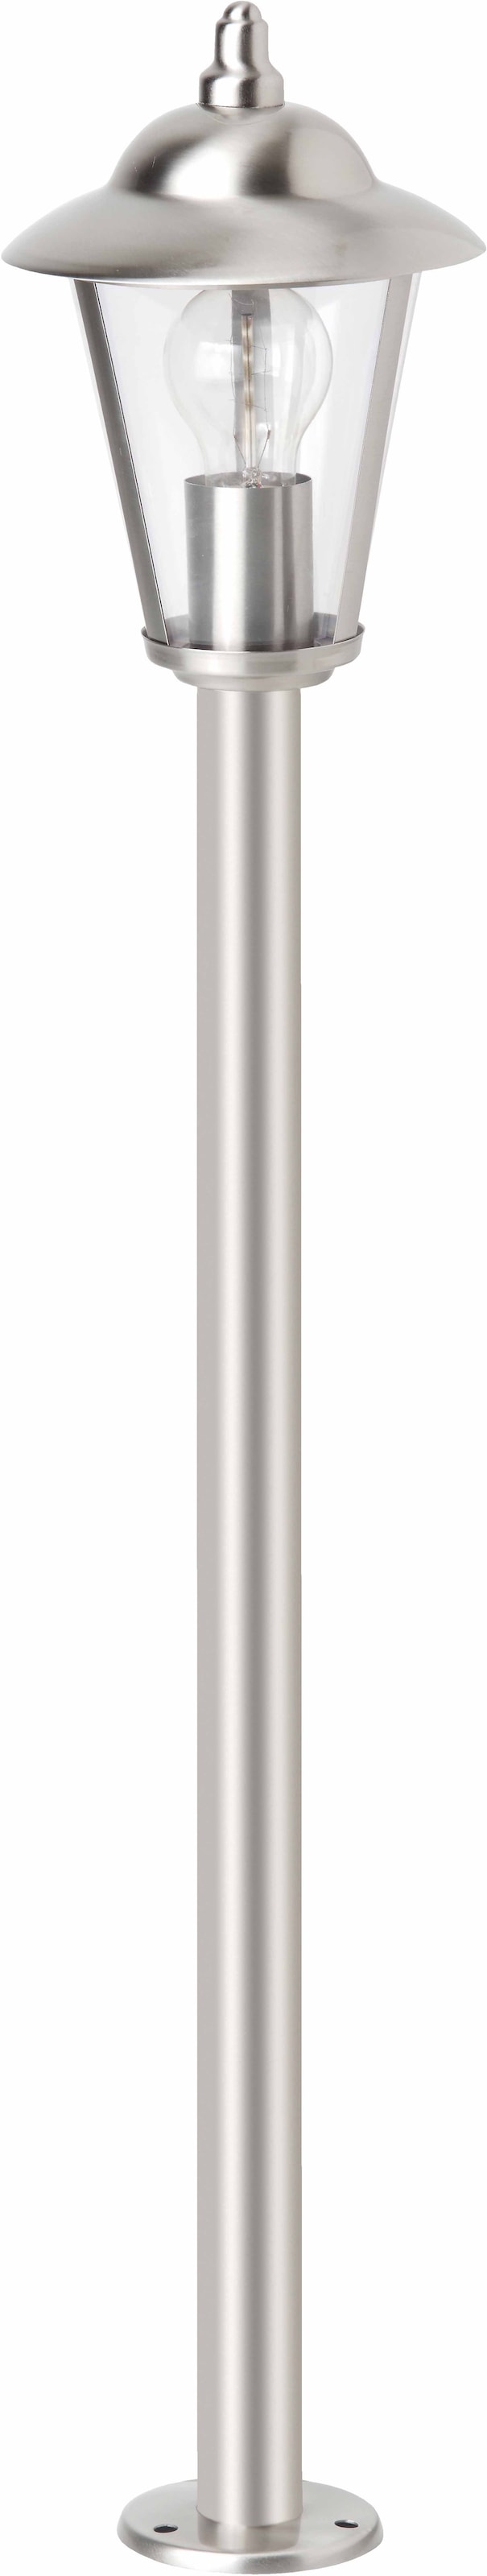 Brilliant Leuchten Aussen-Stehlampe à prix E27 »NEIL«, bas